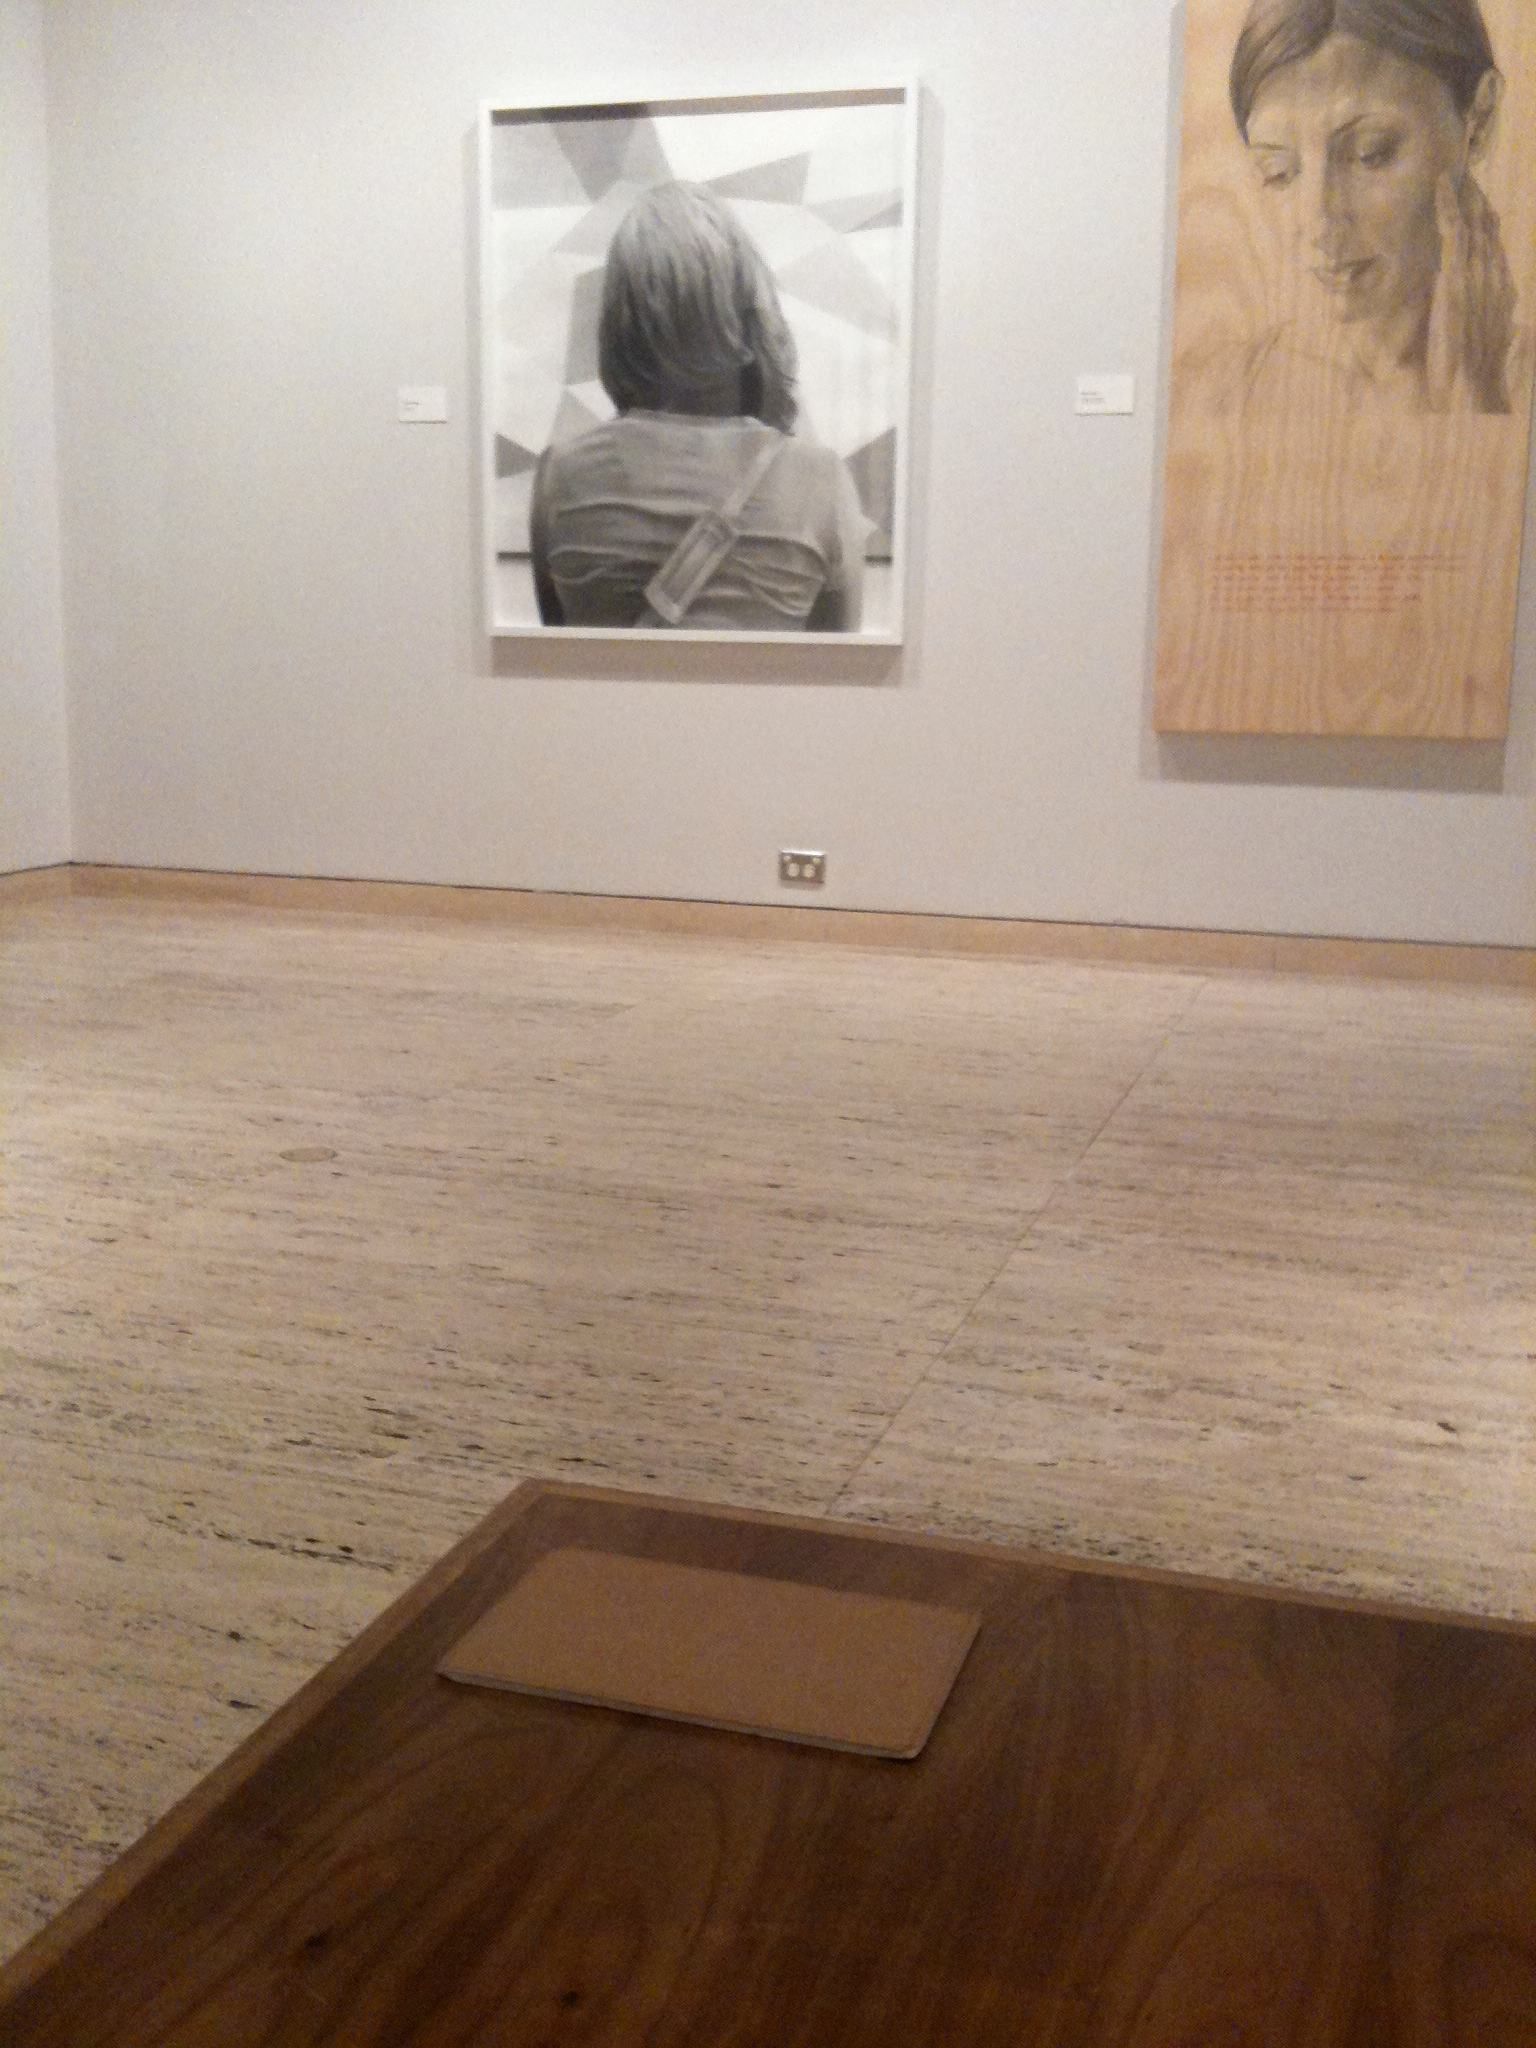 Slate as a sketchbook in a gallery